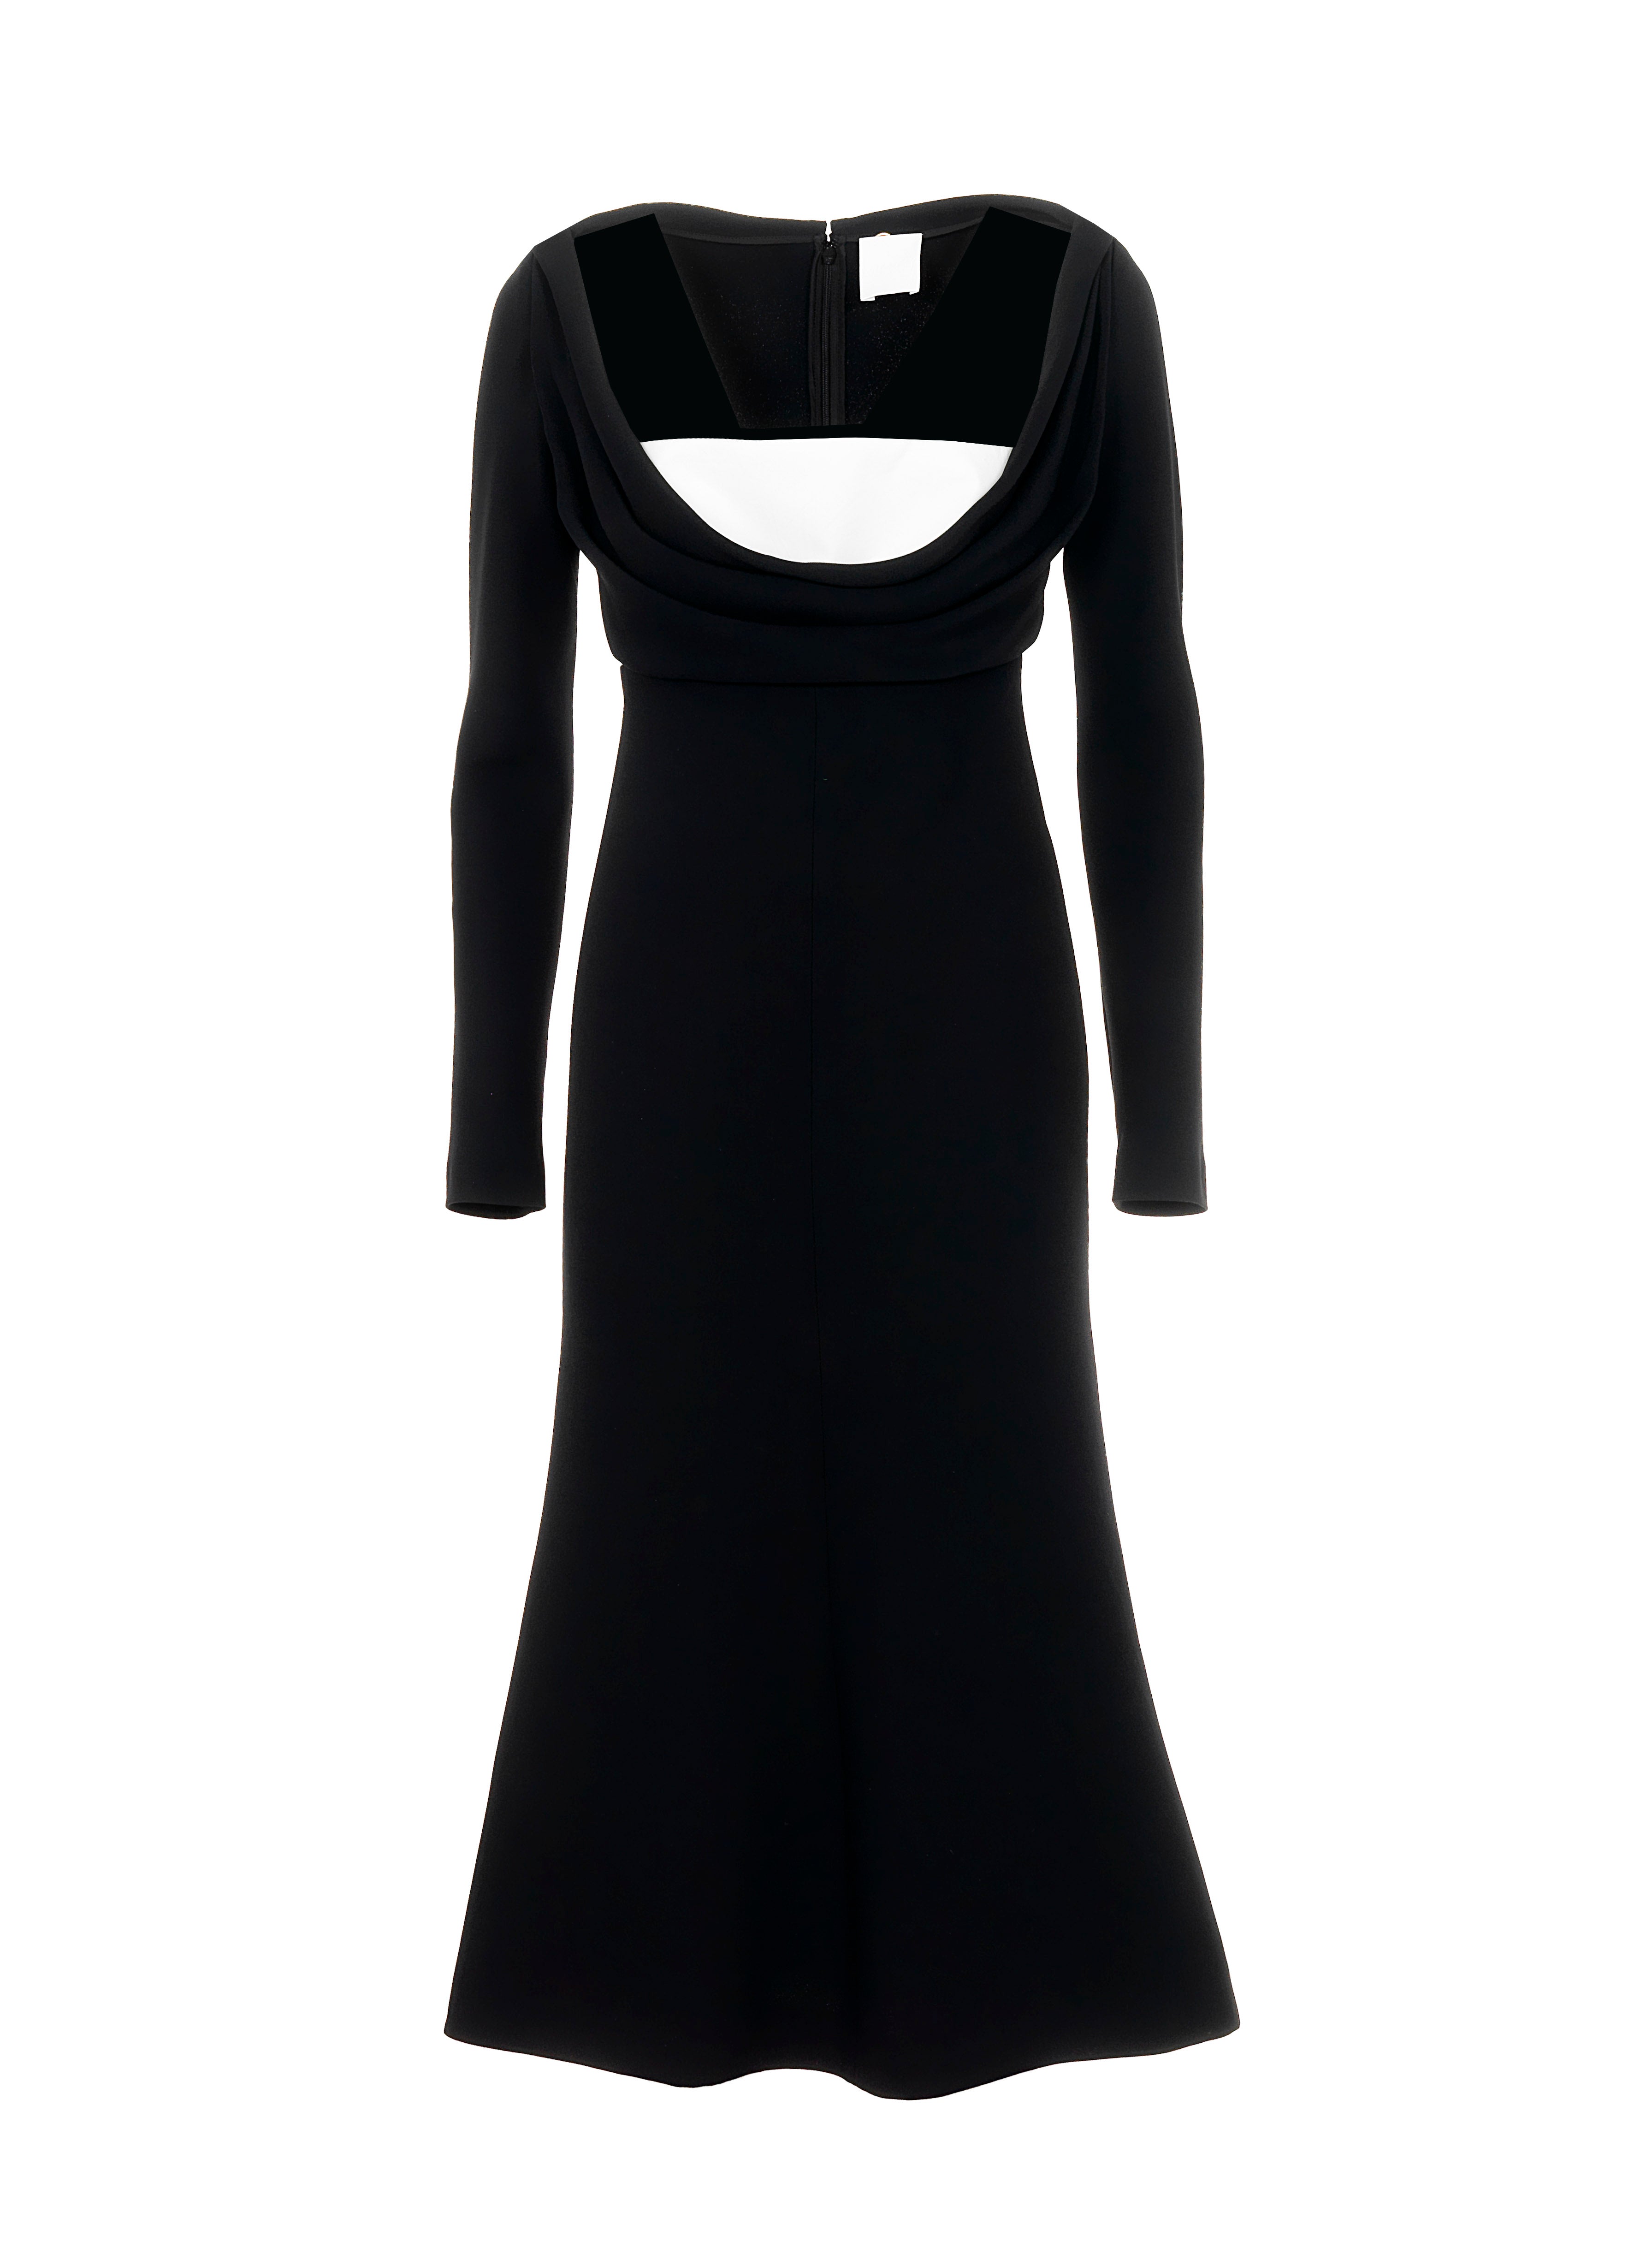 Long Sleeve Dress in Black